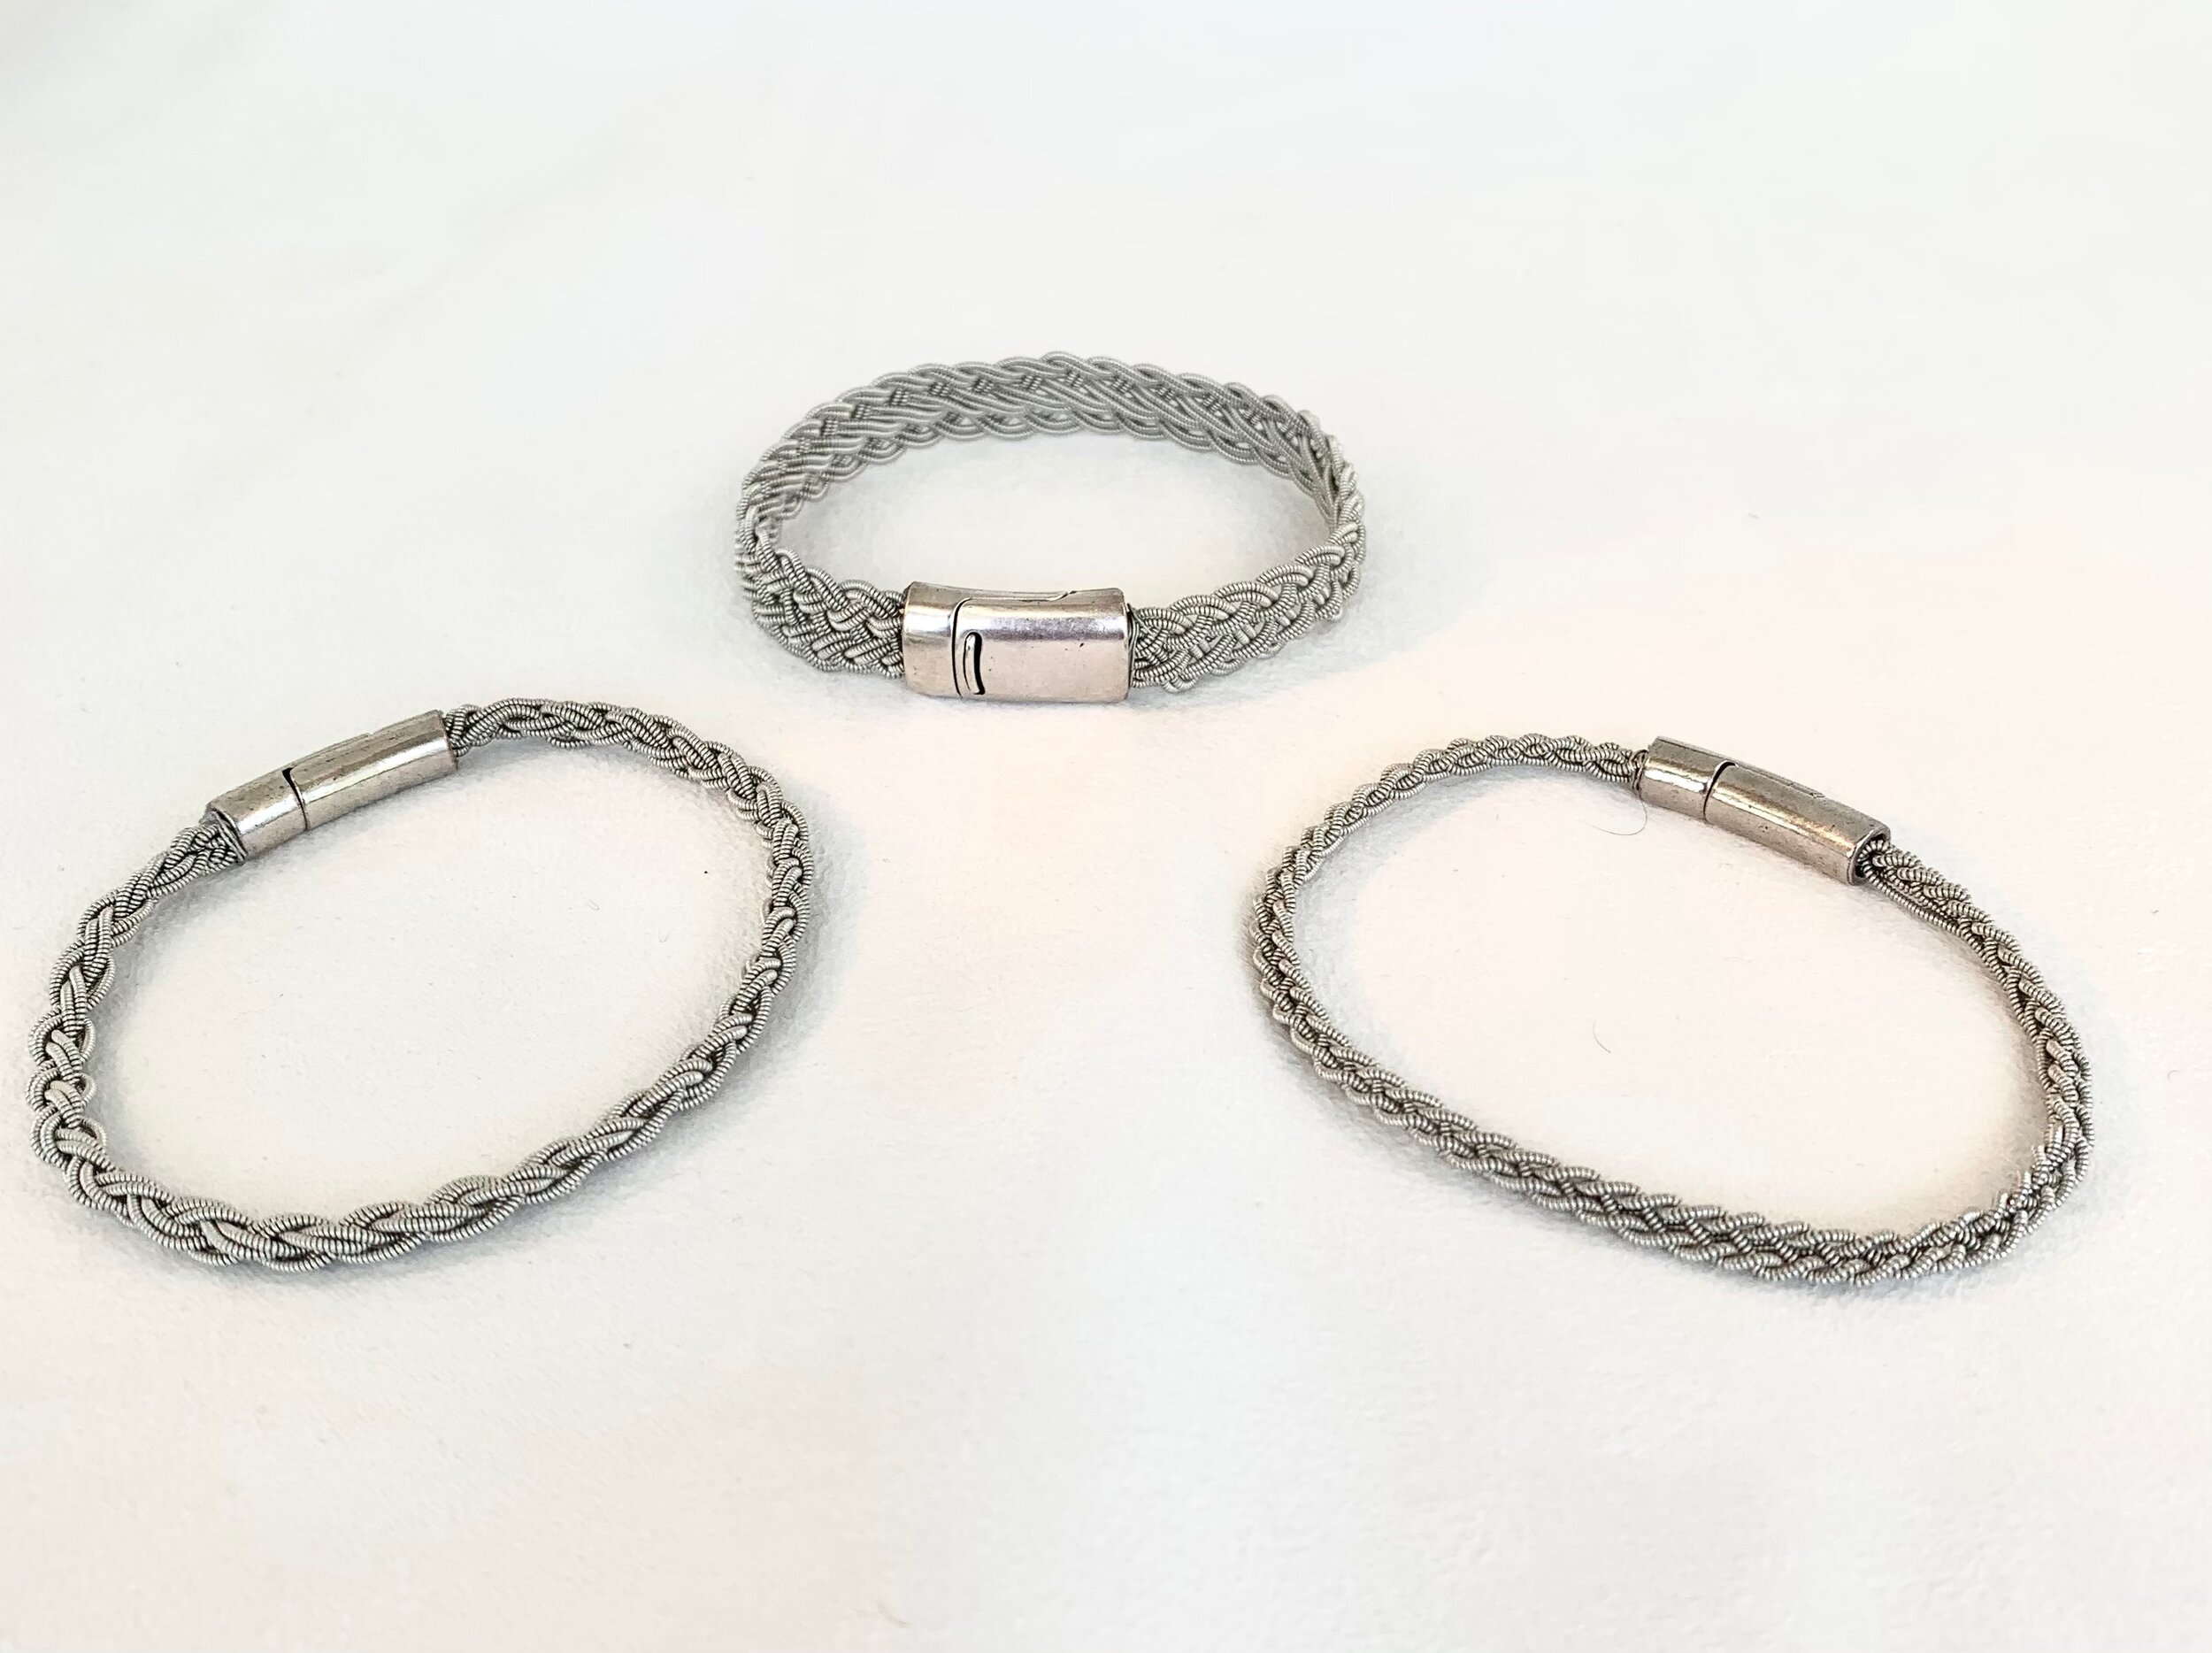 Wire woven bracelets!